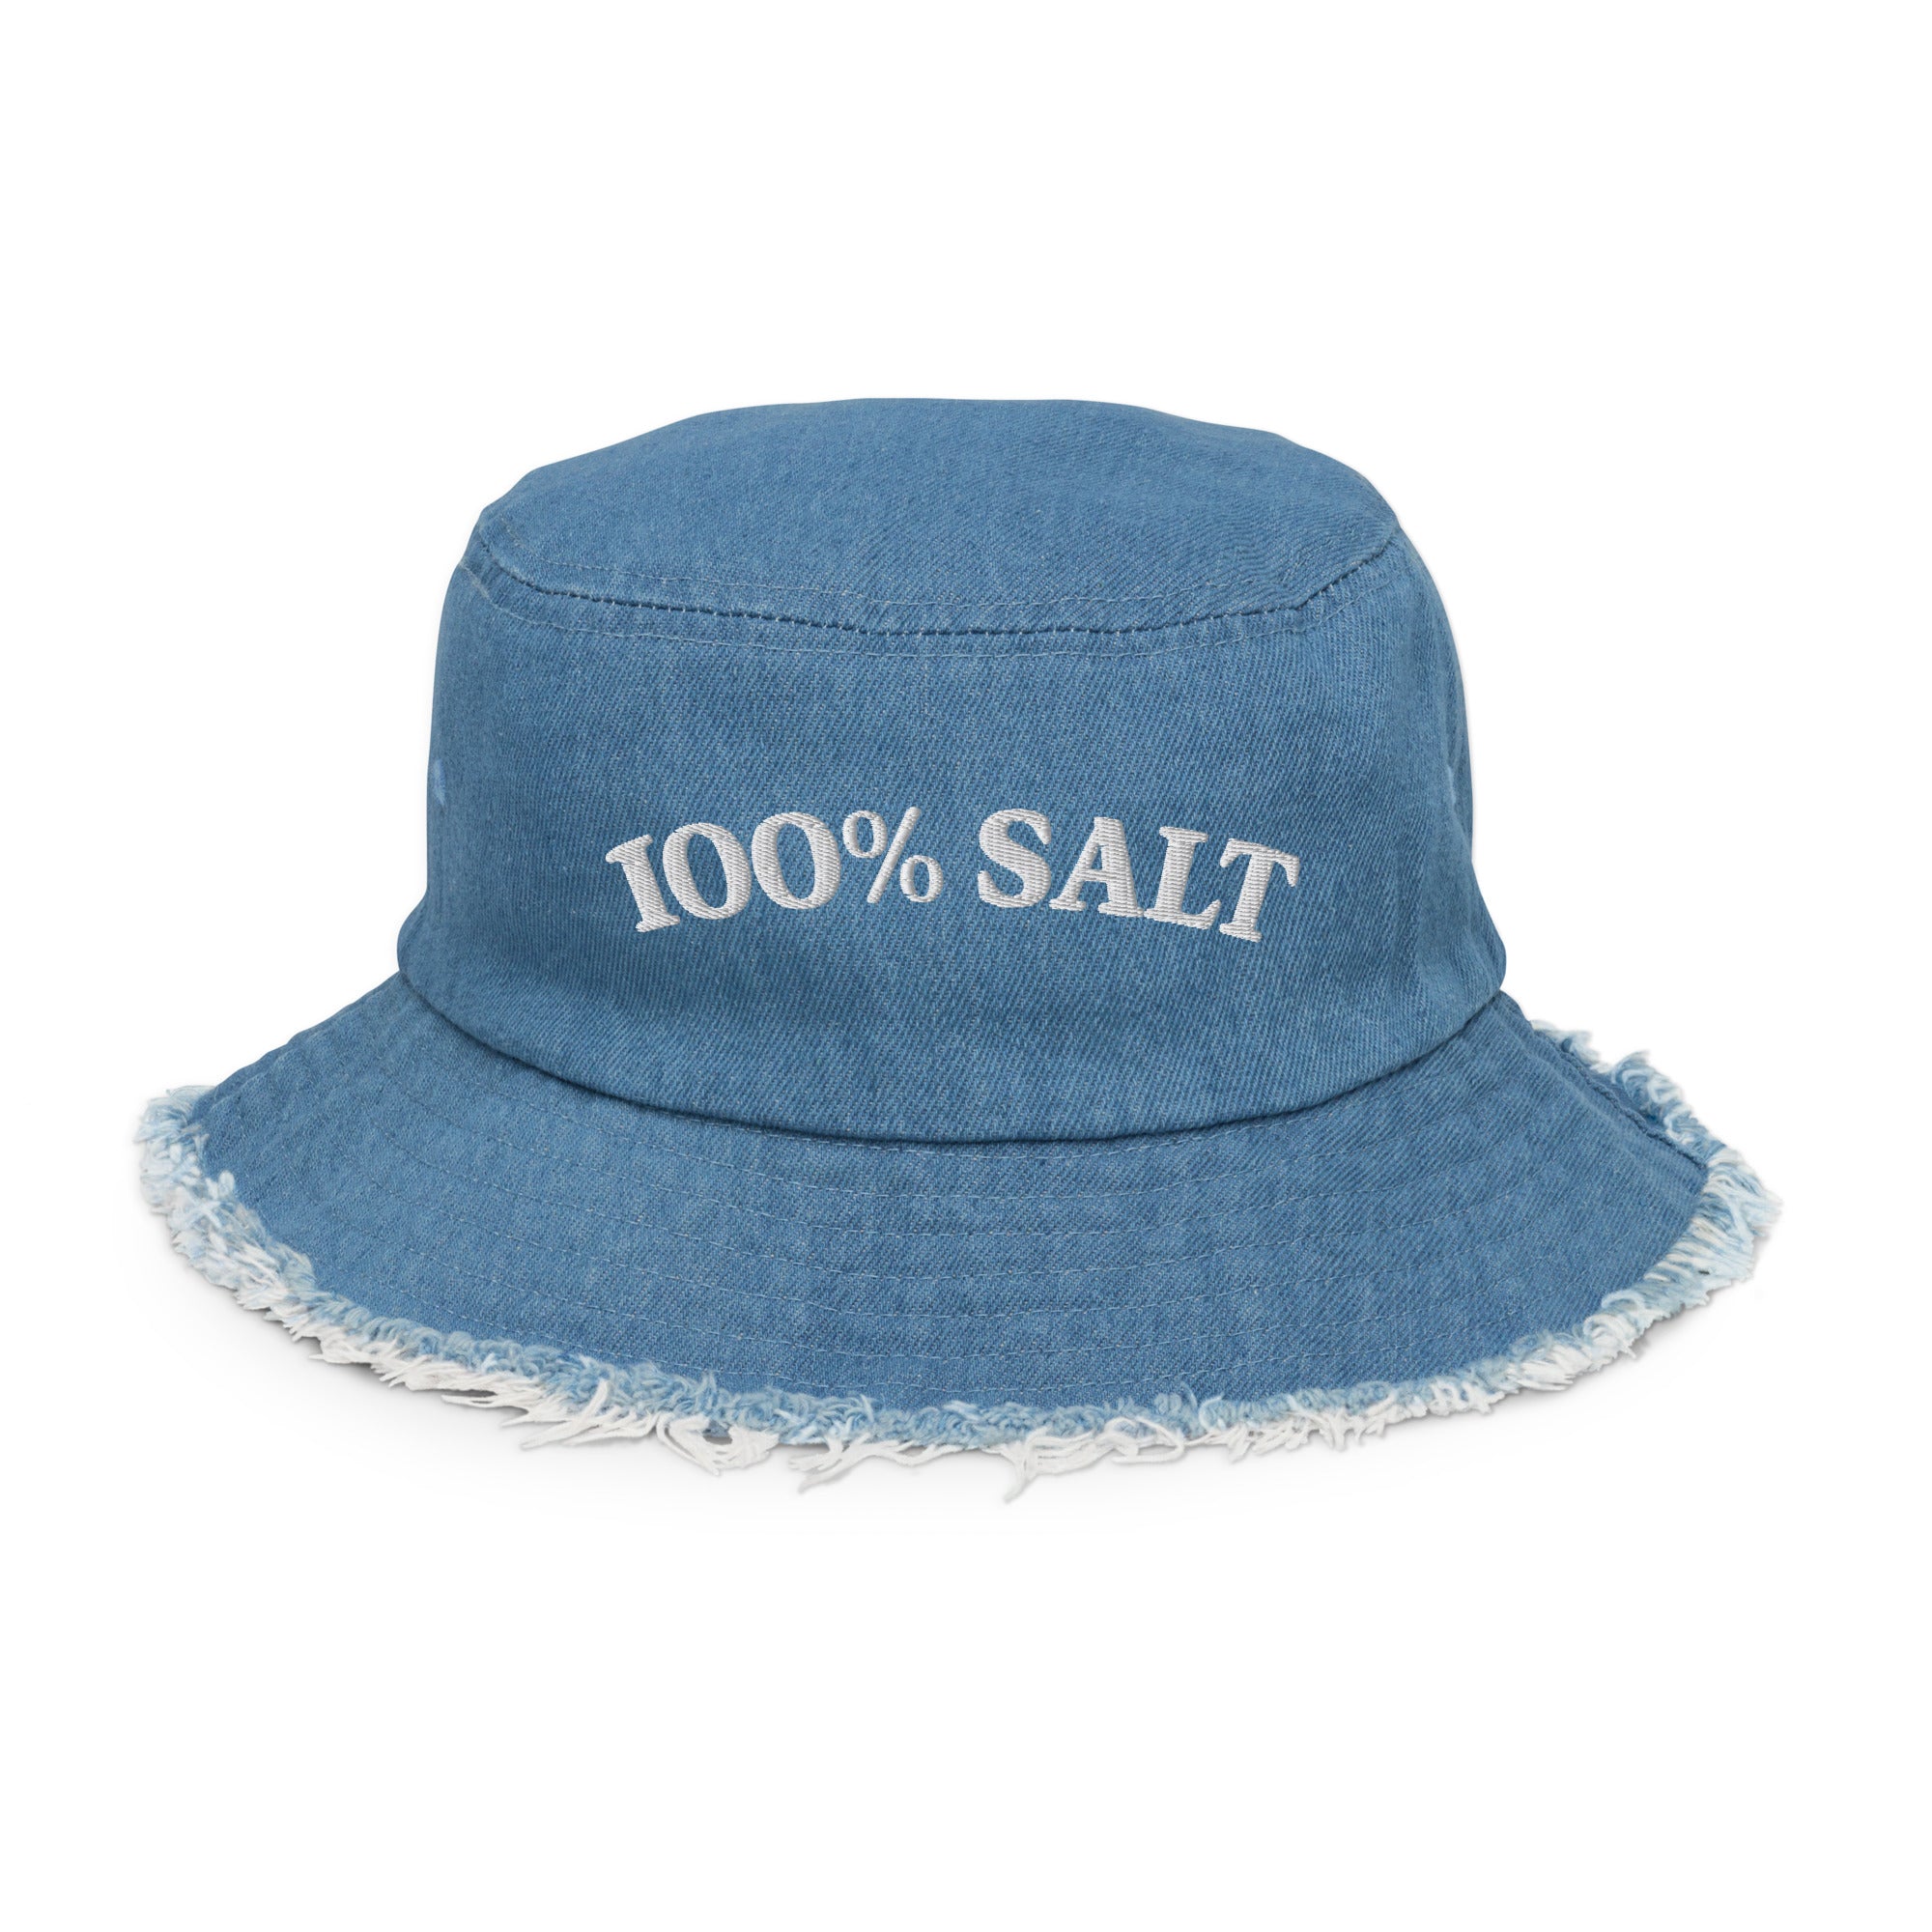 100% Salt Distressed Denim Bucket Hat